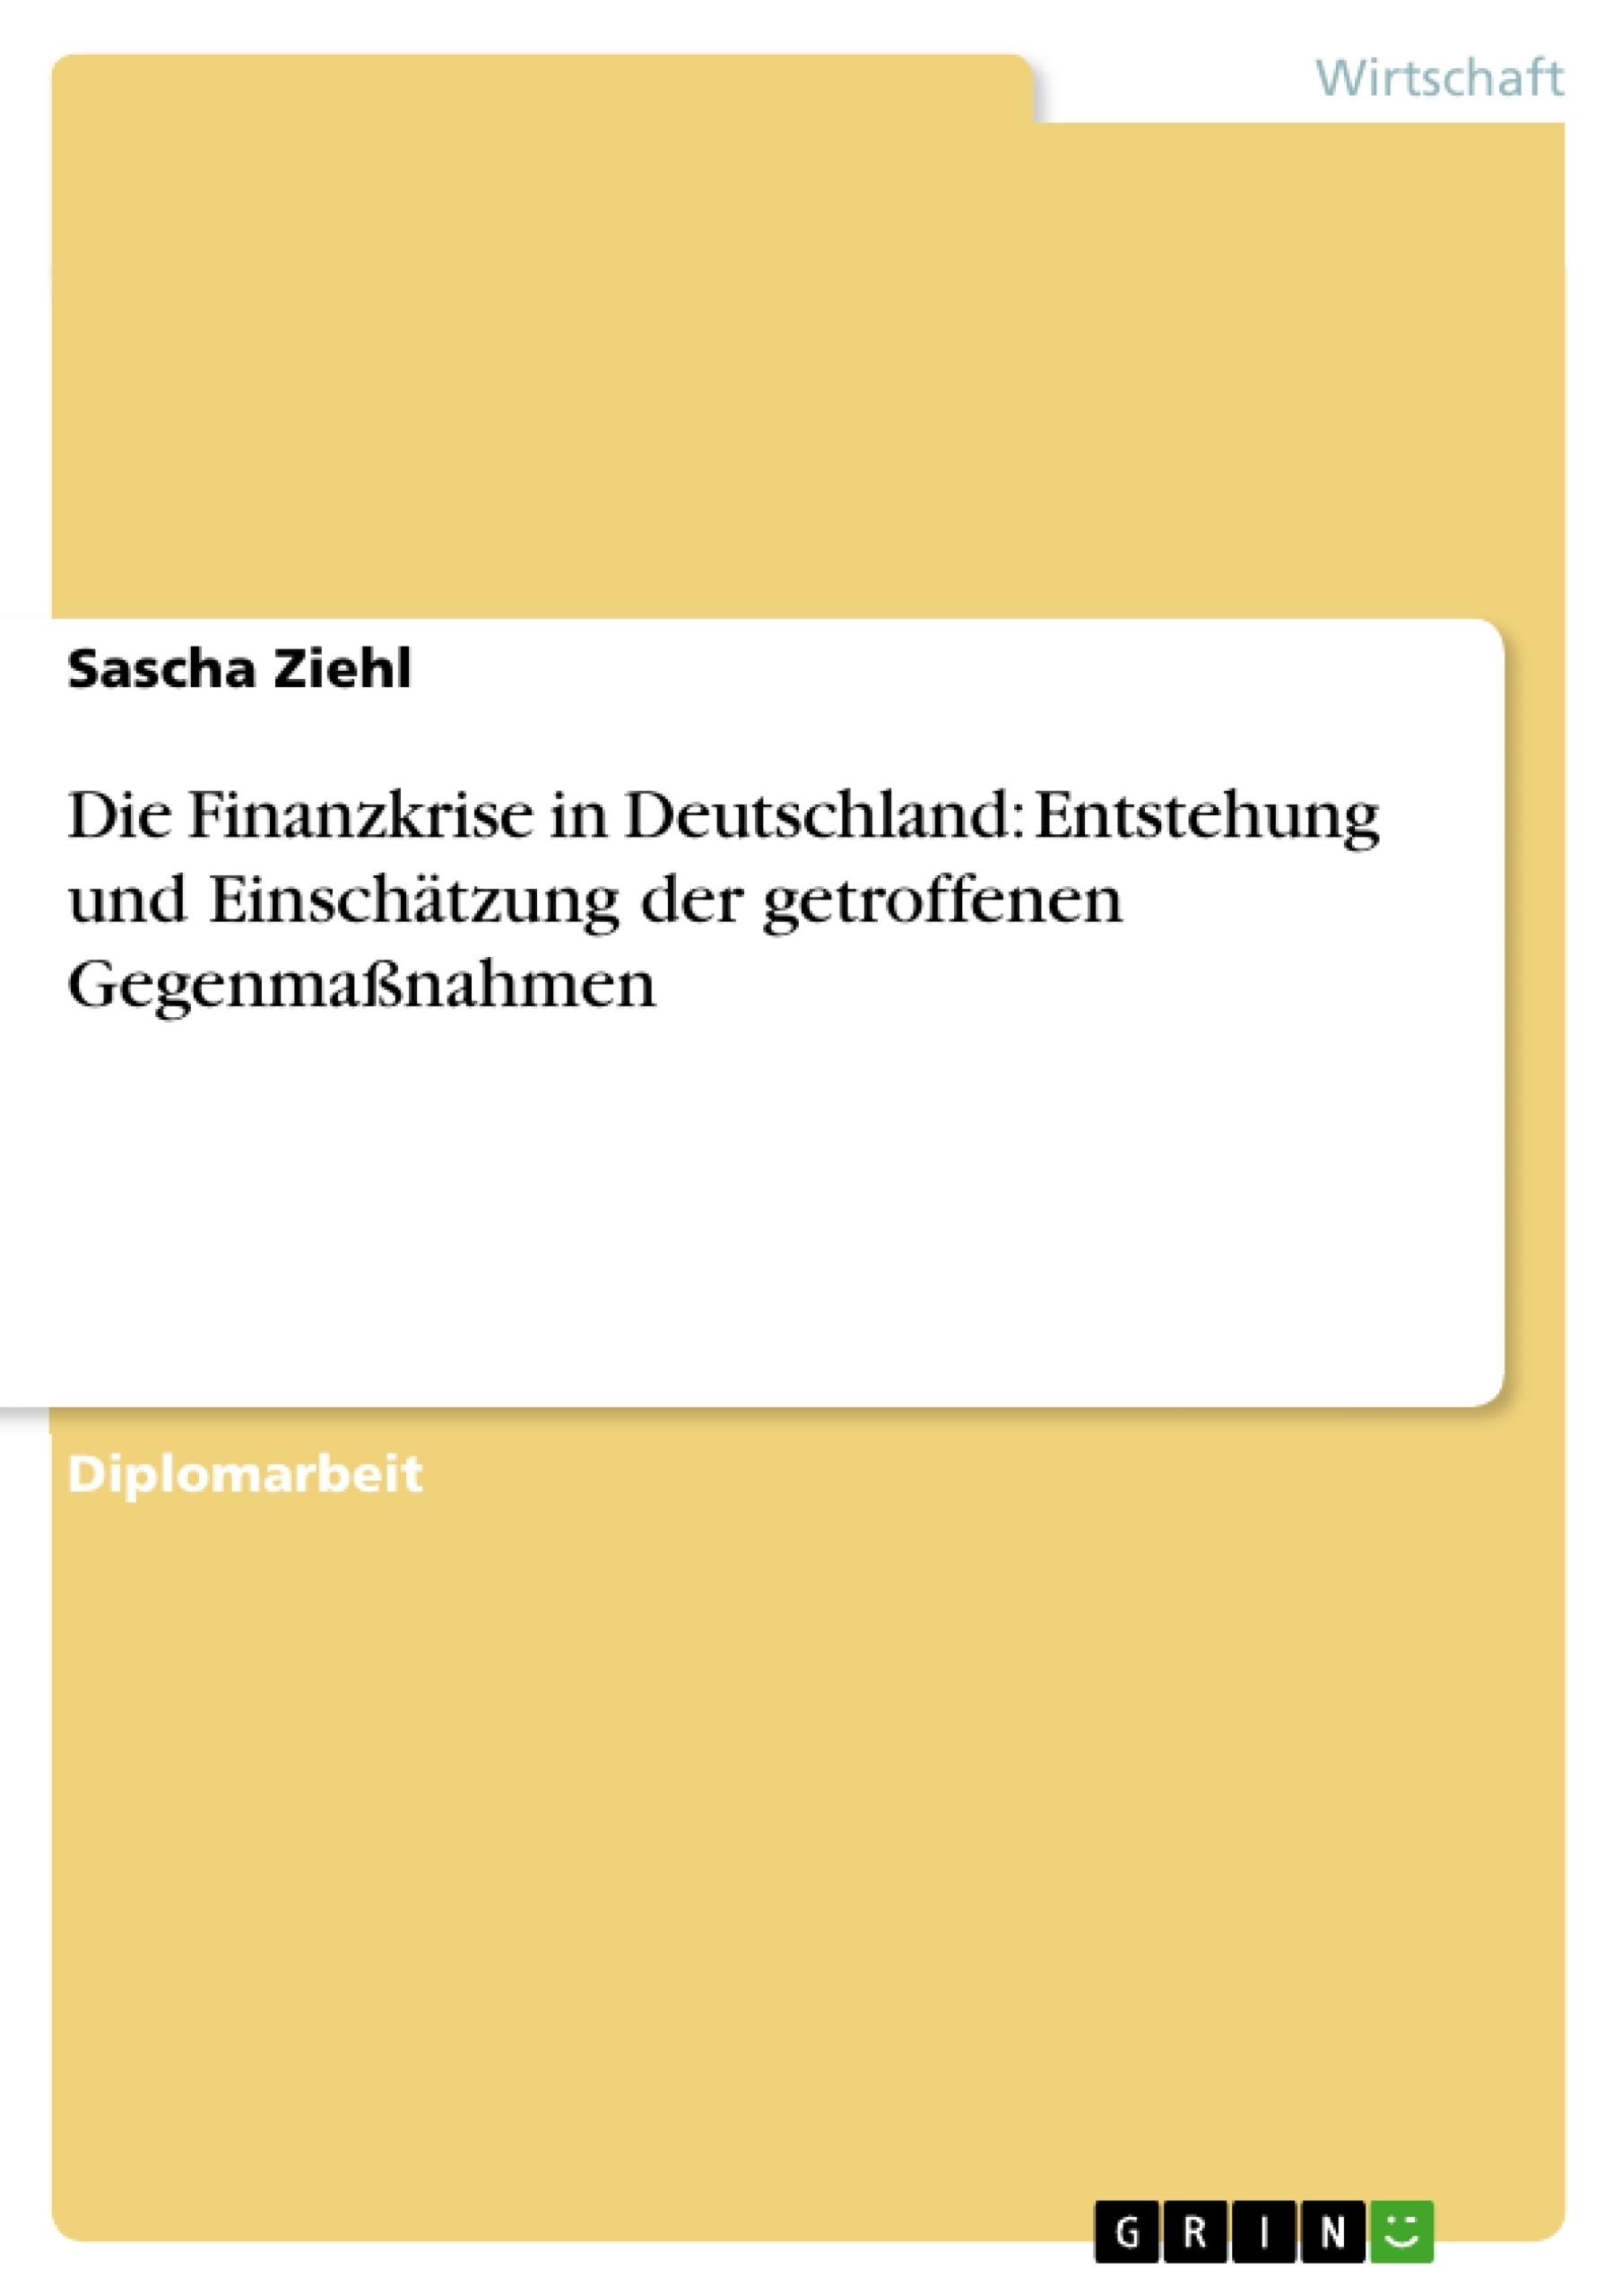 Title: Die Finanzkrise in Deutschland: Entstehung und Einschätzung der getroffenen Gegenmaßnahmen